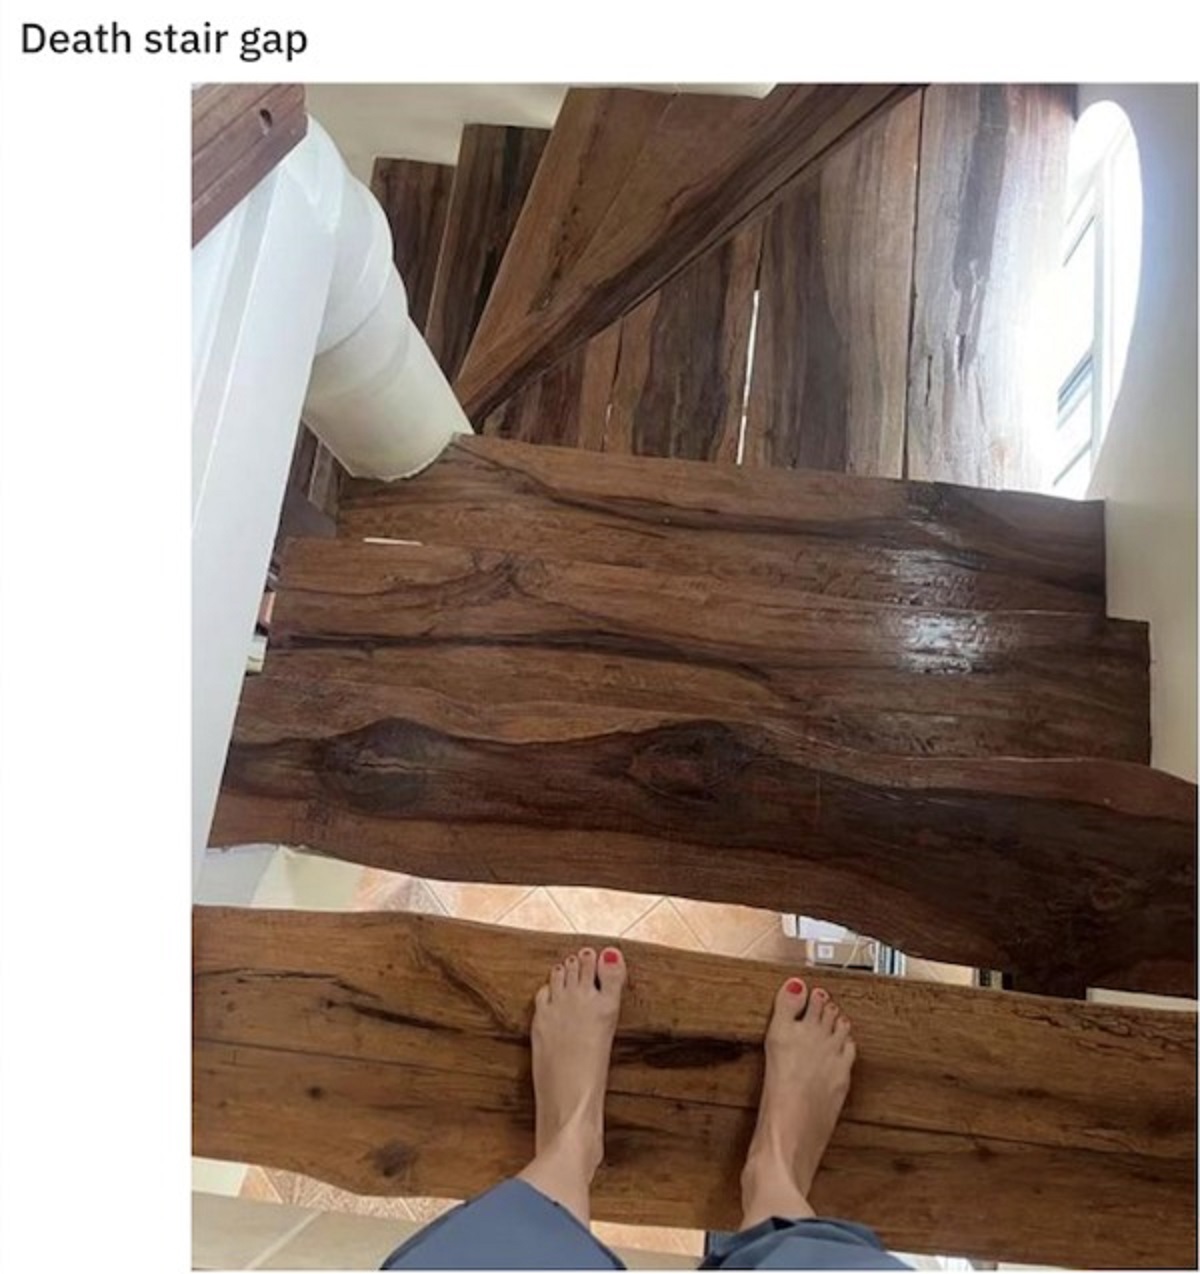 floor - Death stair gap